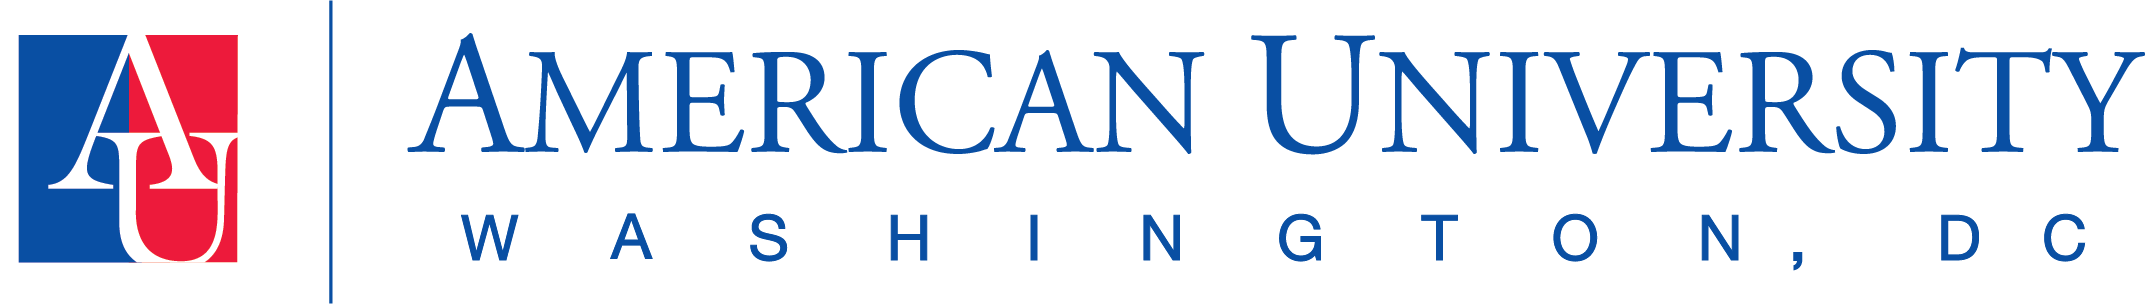 Horizontal Logo, AU icon left of American University Washington, D.C.